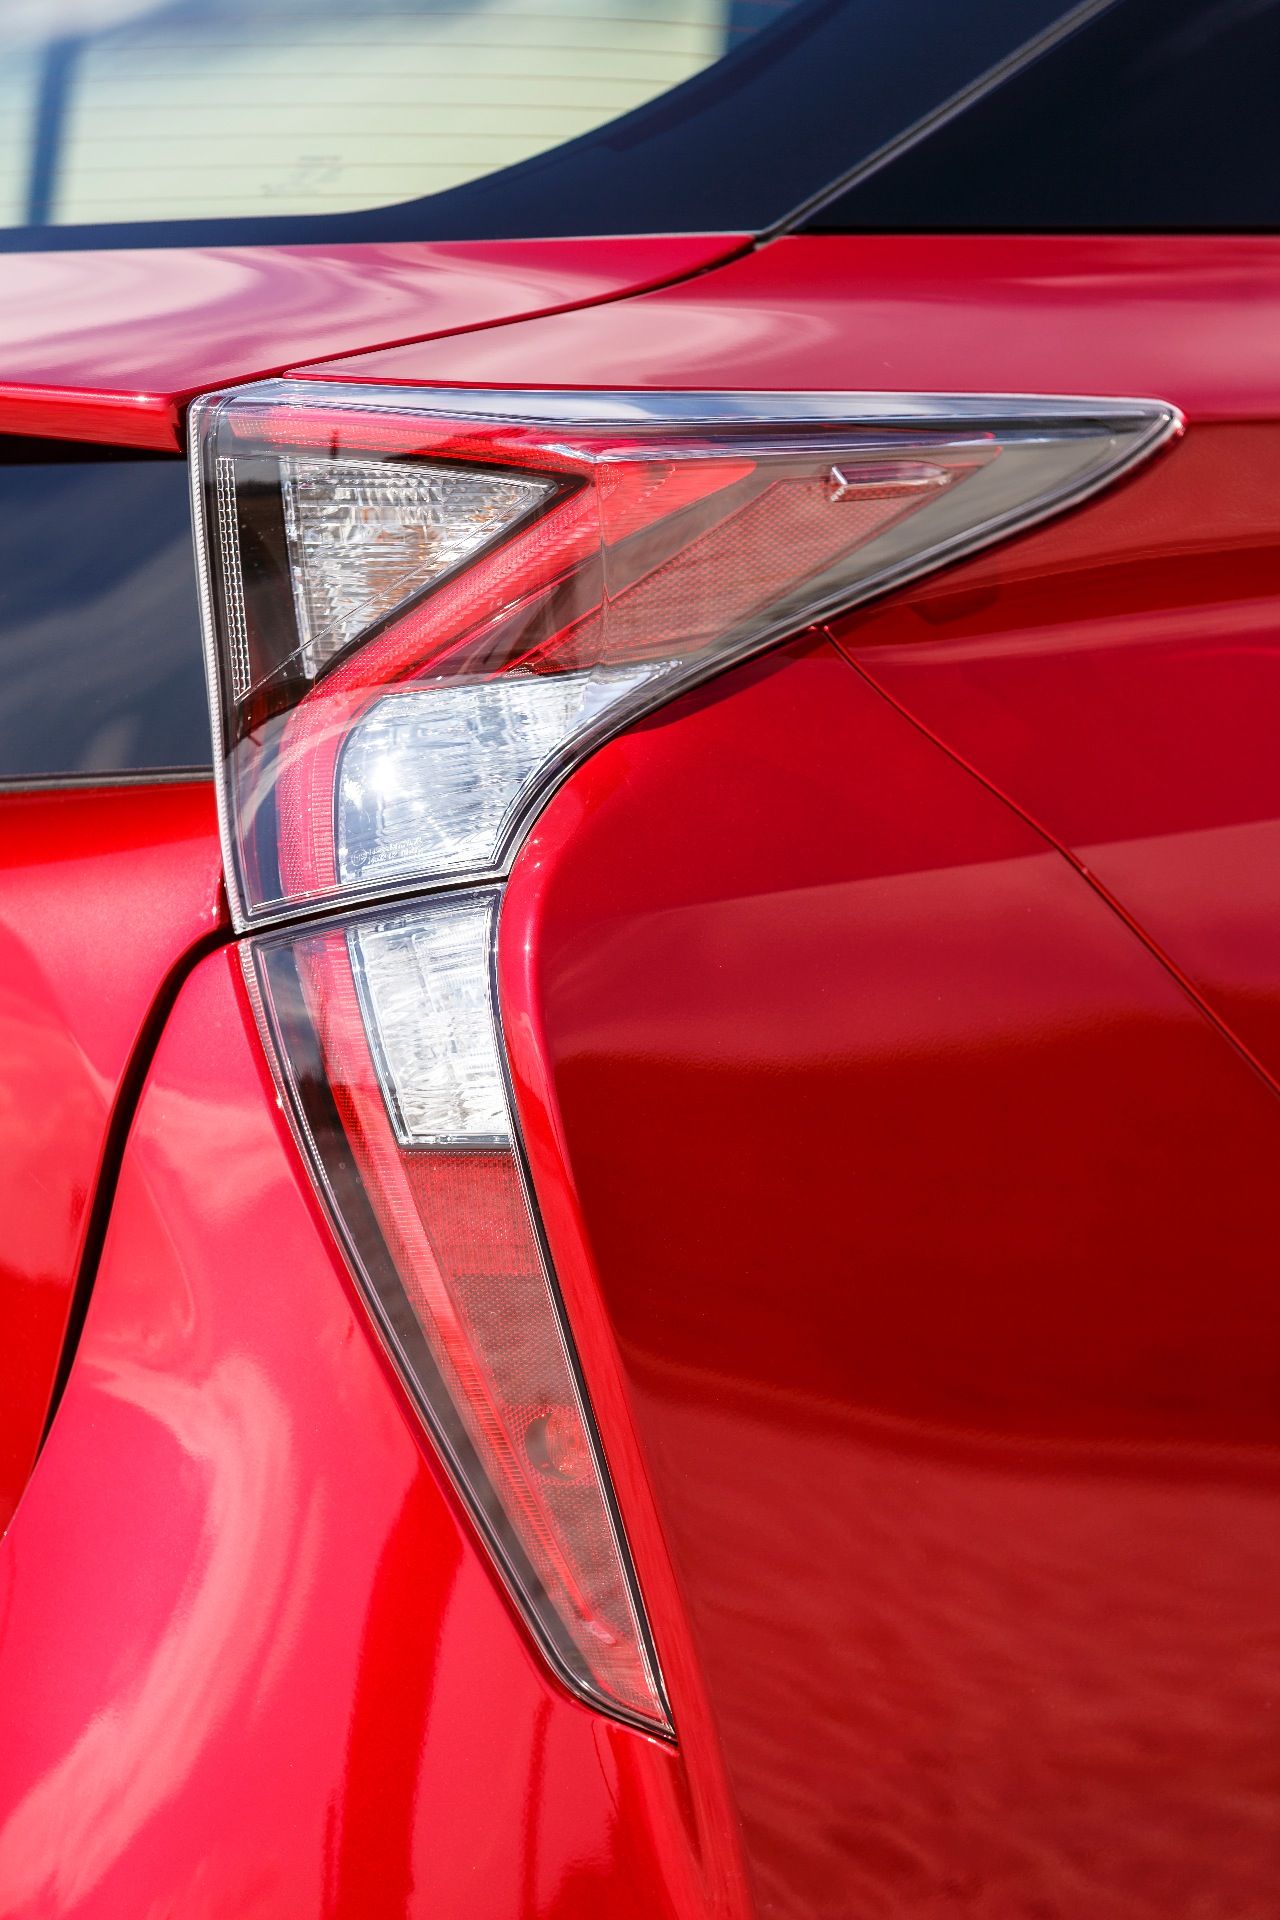 Toyota wollte mit dem Prius wieder auffallen, das ist definitiv gelungen: Spektakuläre geformte Rücklichter mit ebenso auffälliger Lichtgraphik.